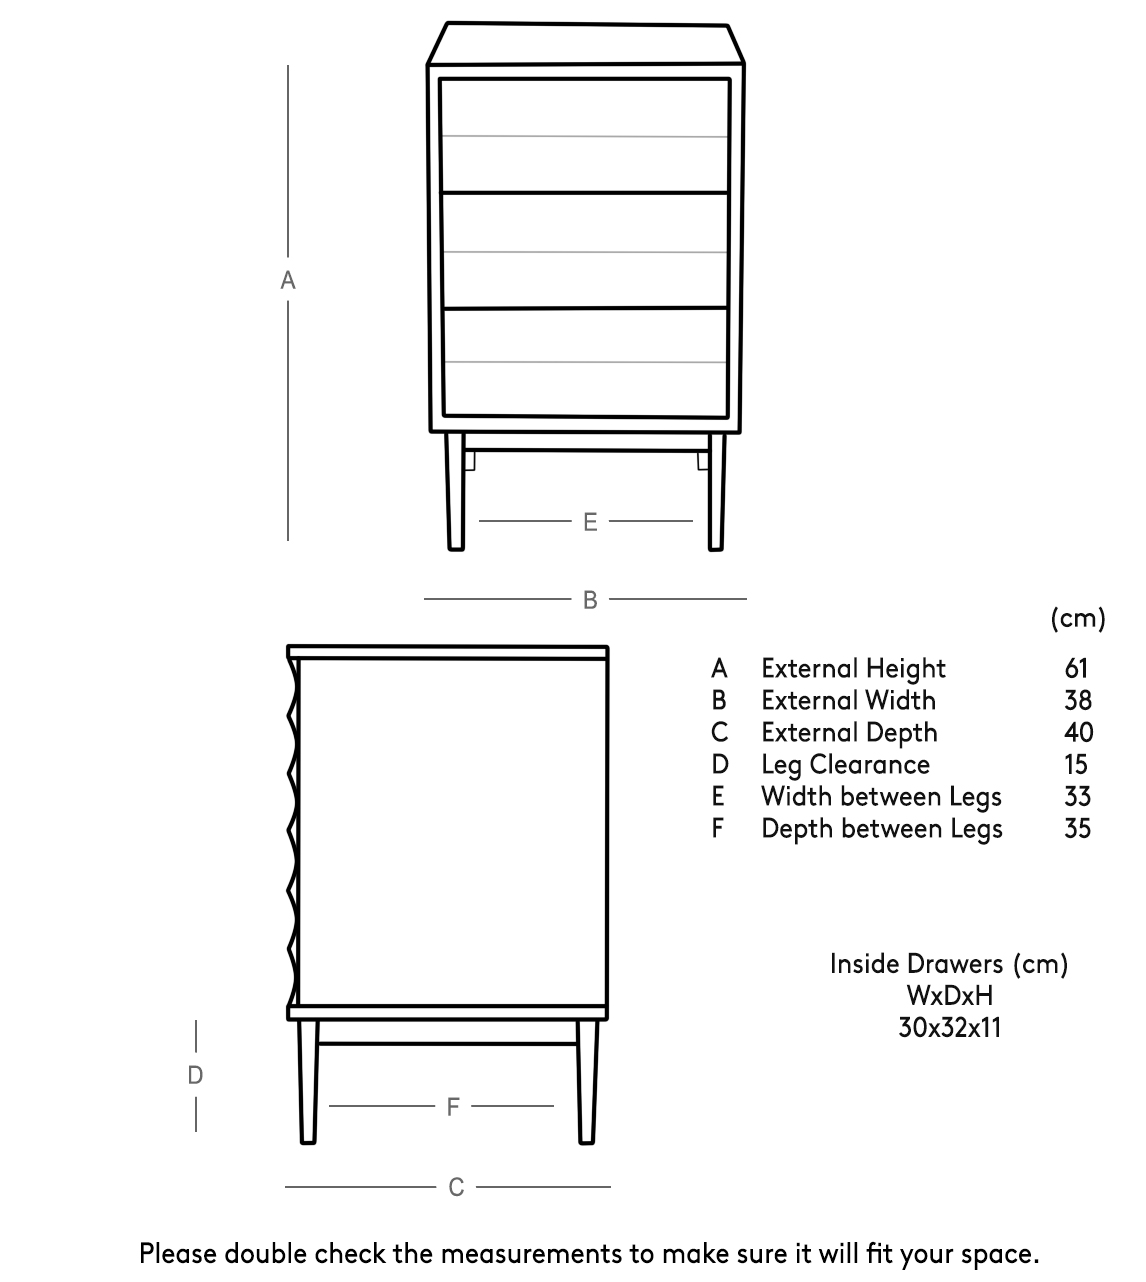 table of height and katana length